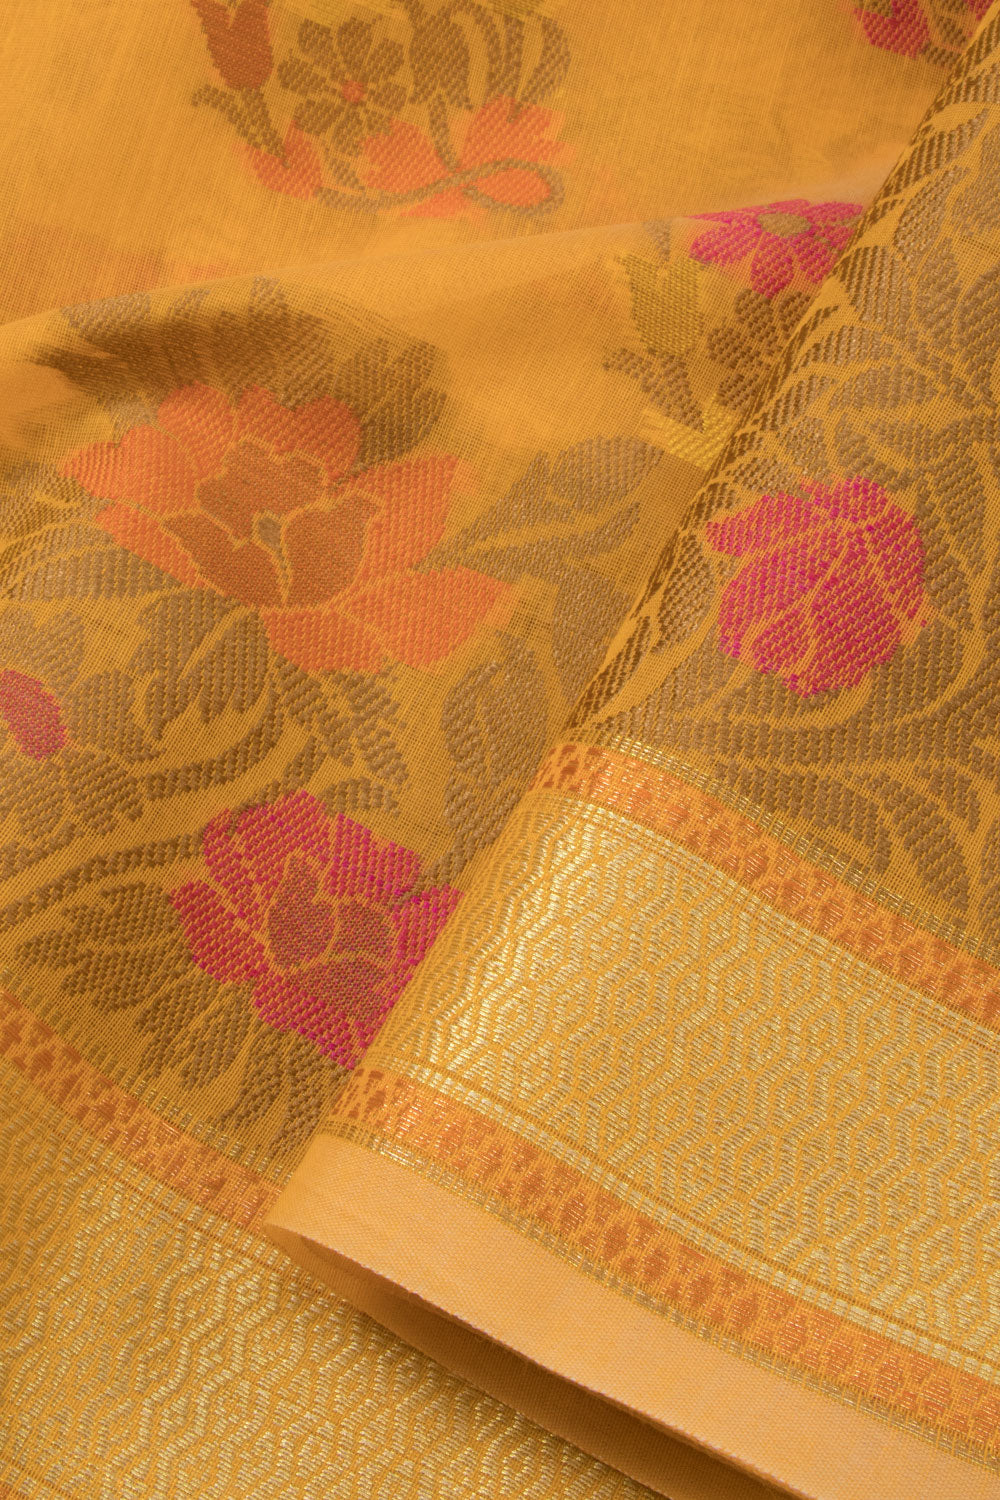 Sandal Handloom Banarasi Blended Cotton Saree - Avishya